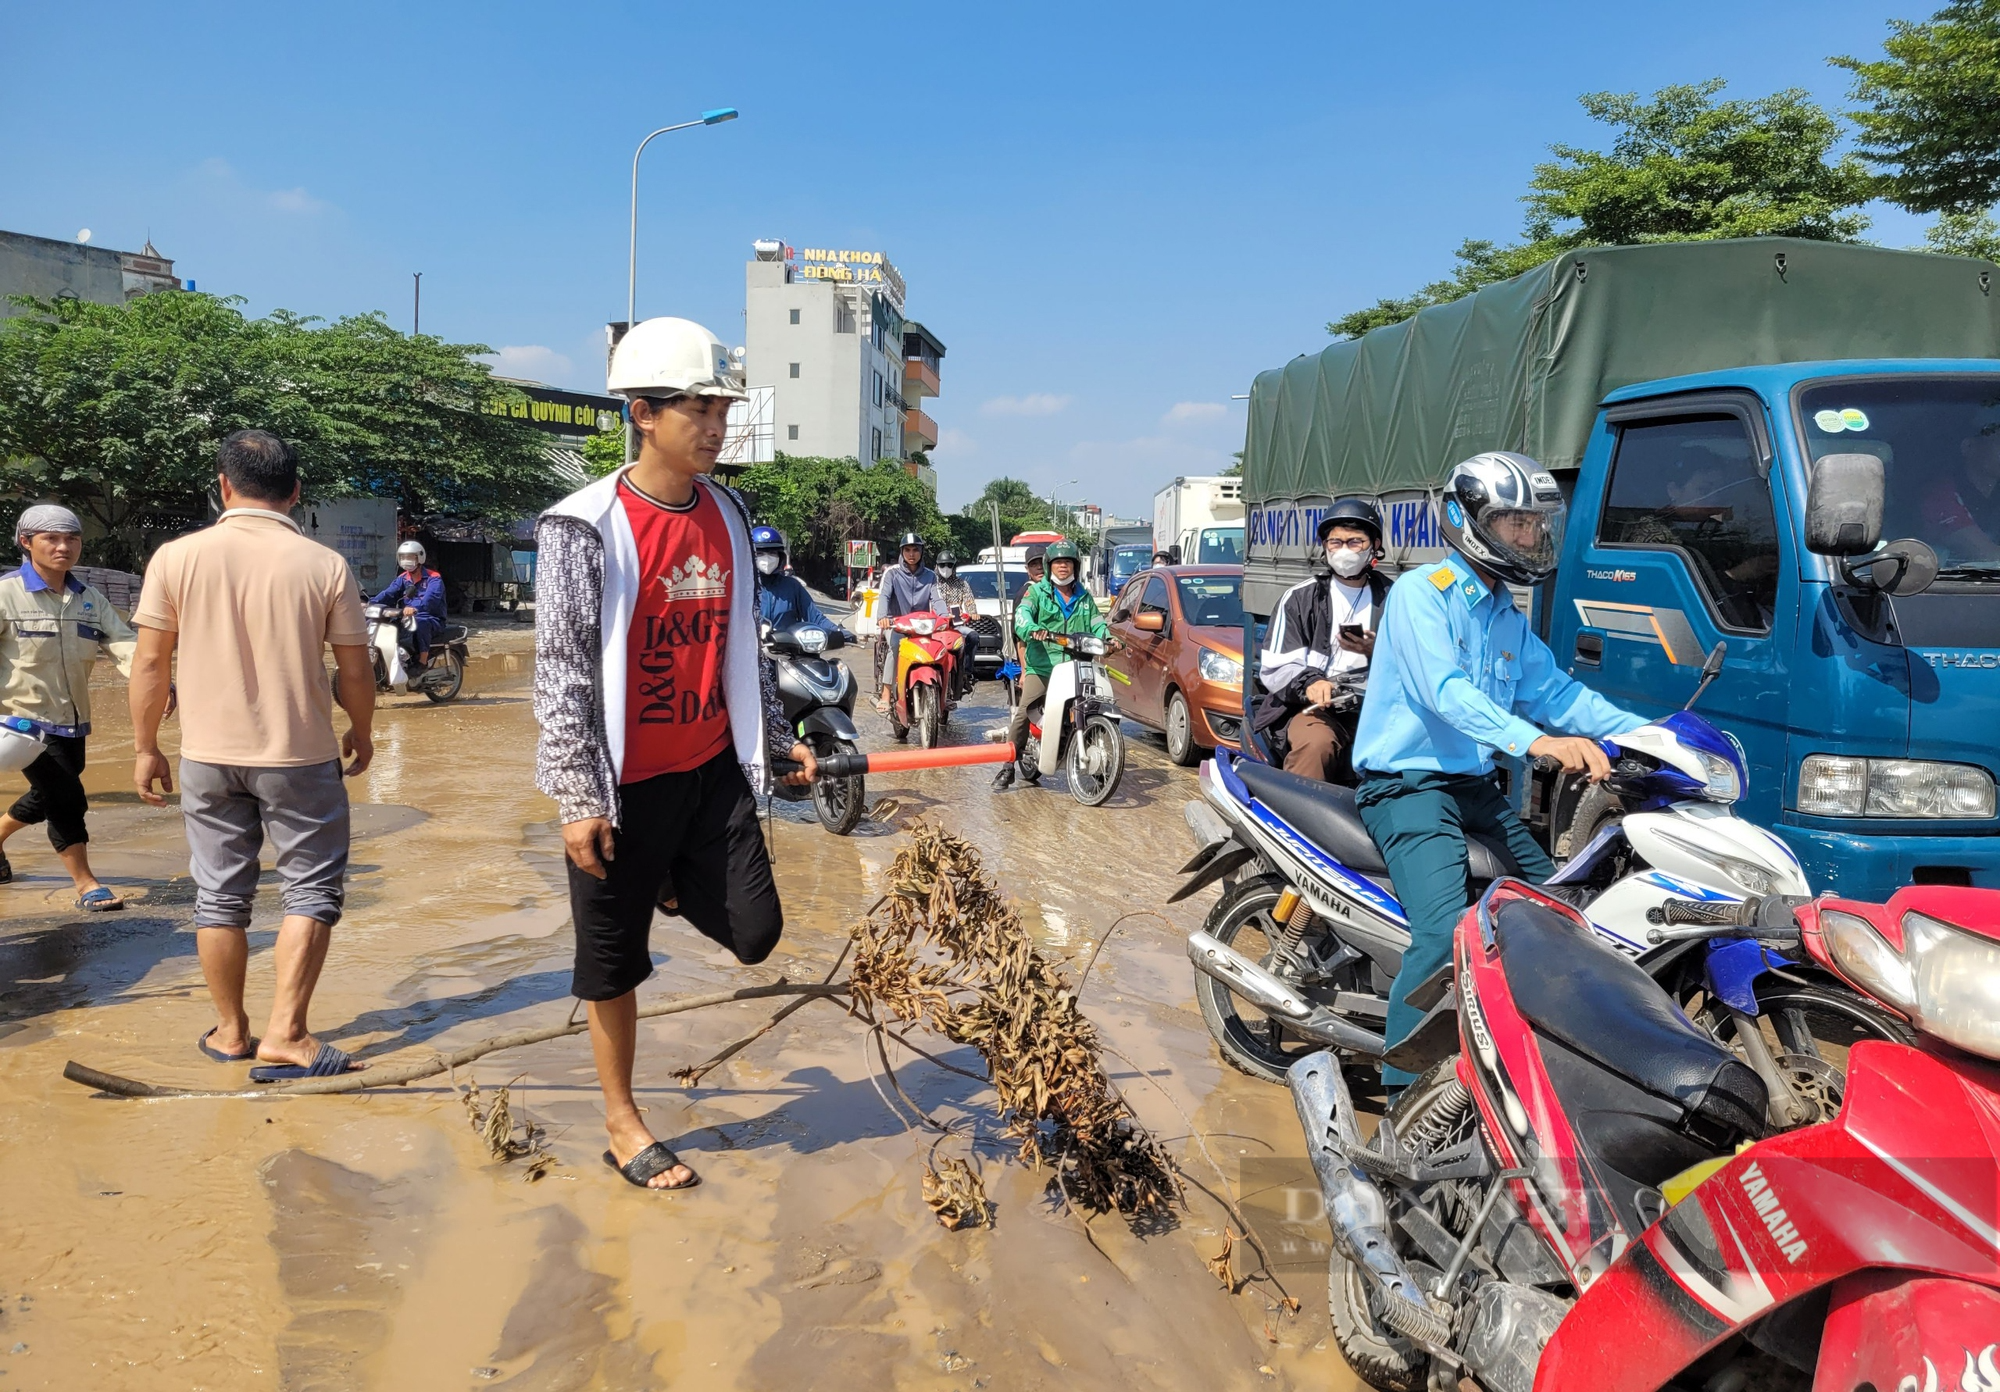  Nước tràn lênh láng trên mặt đường vừa thi công đường ống ở quận Hà Đông - Ảnh 5.